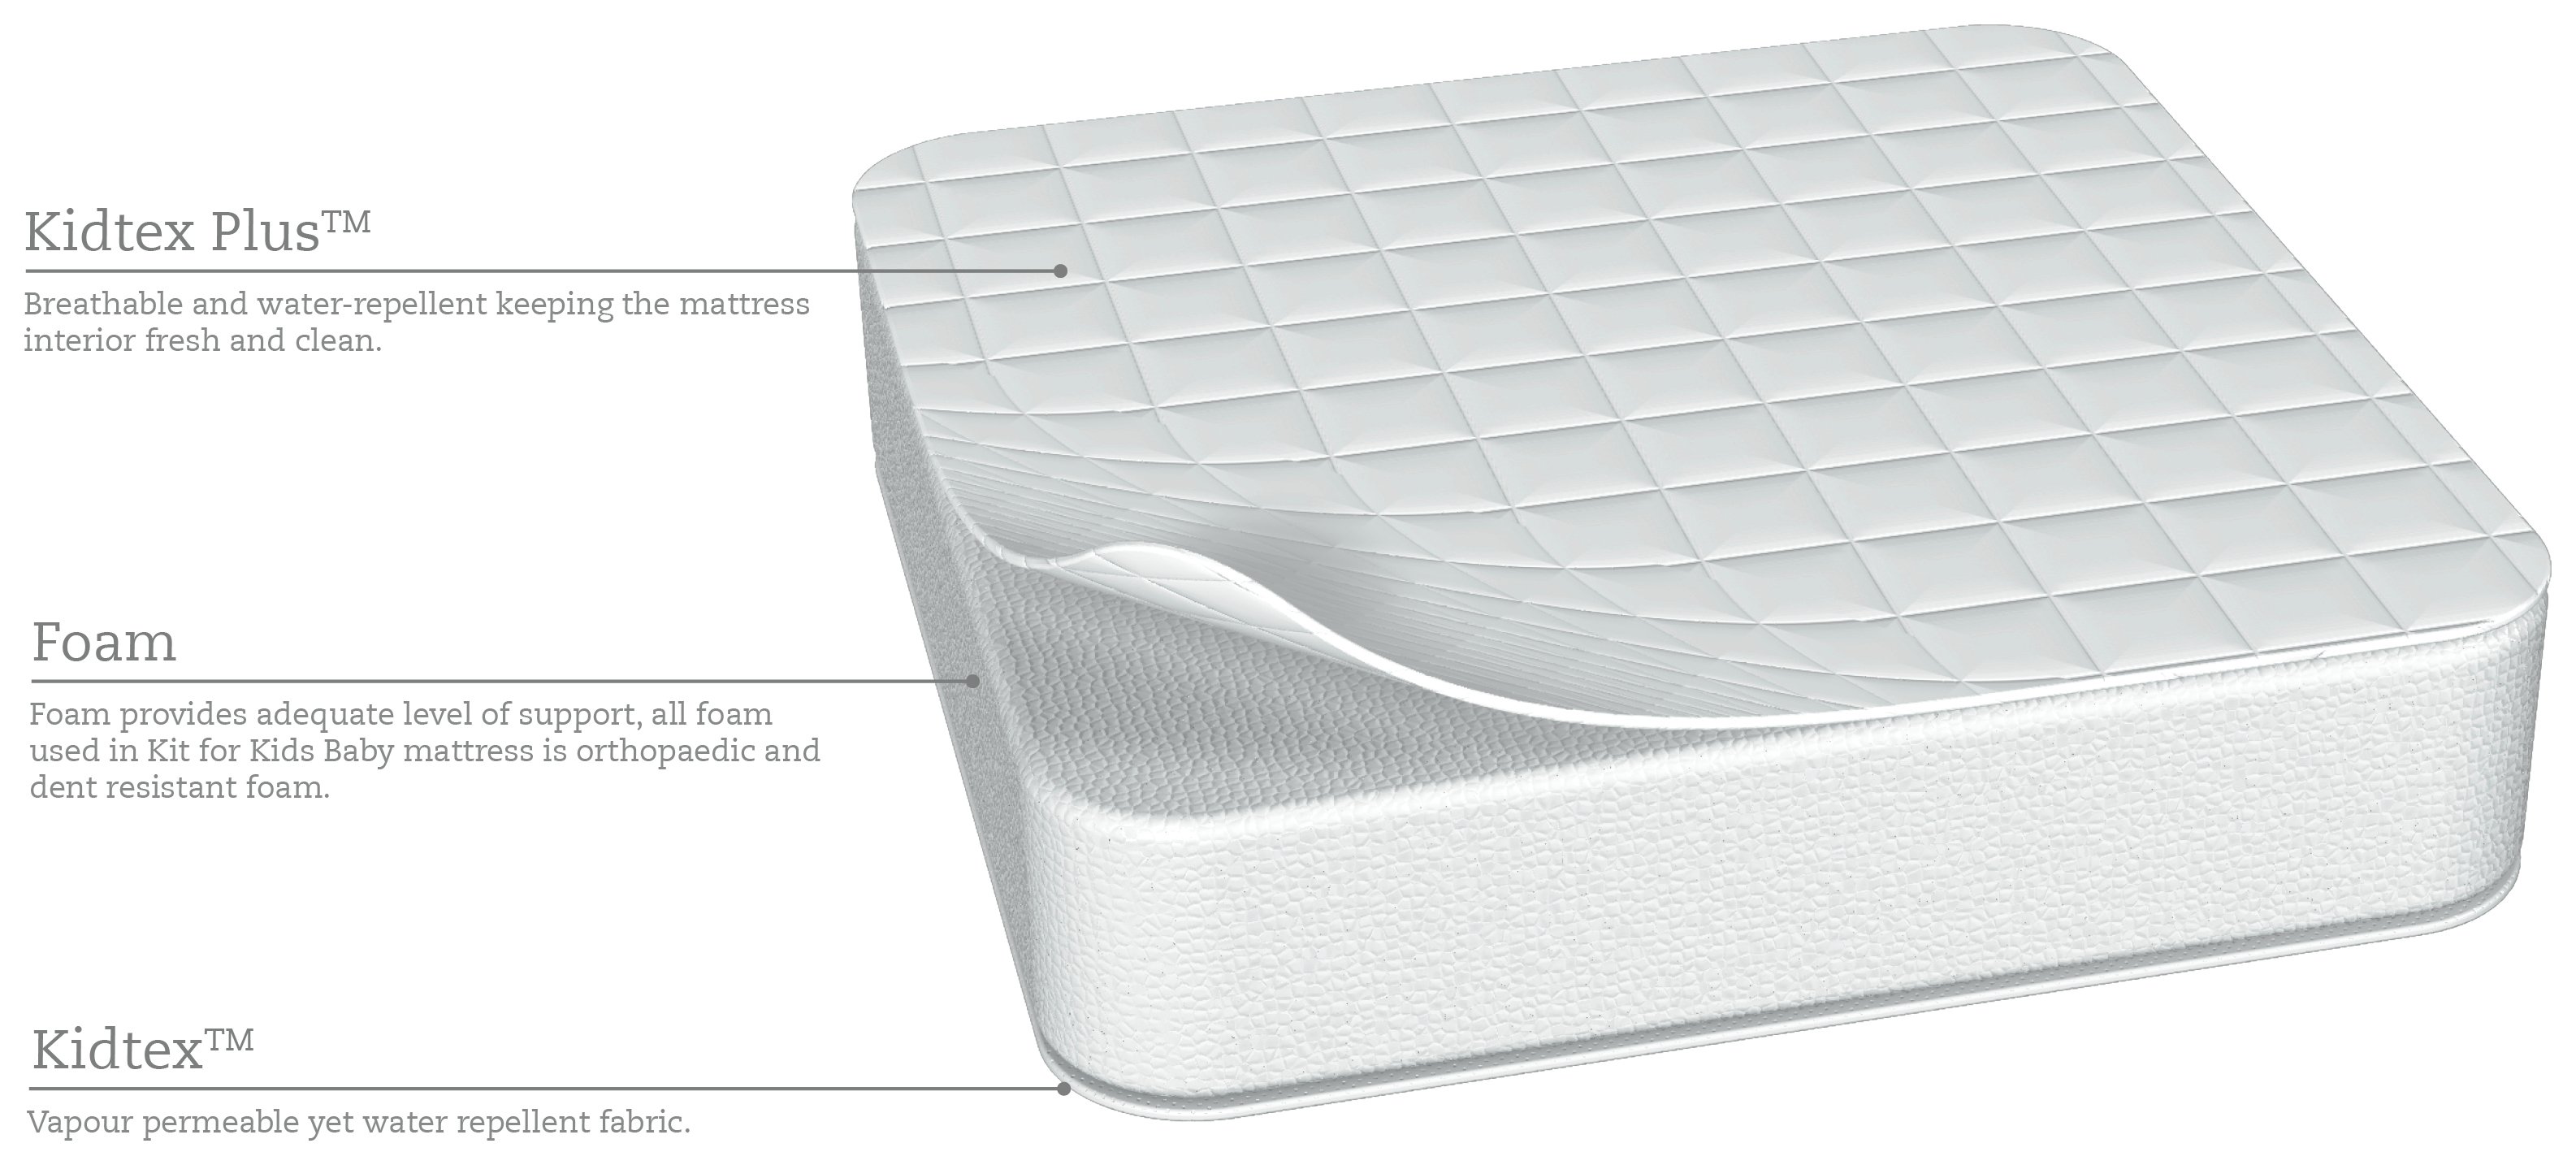 kidtex foam travel cot mattress